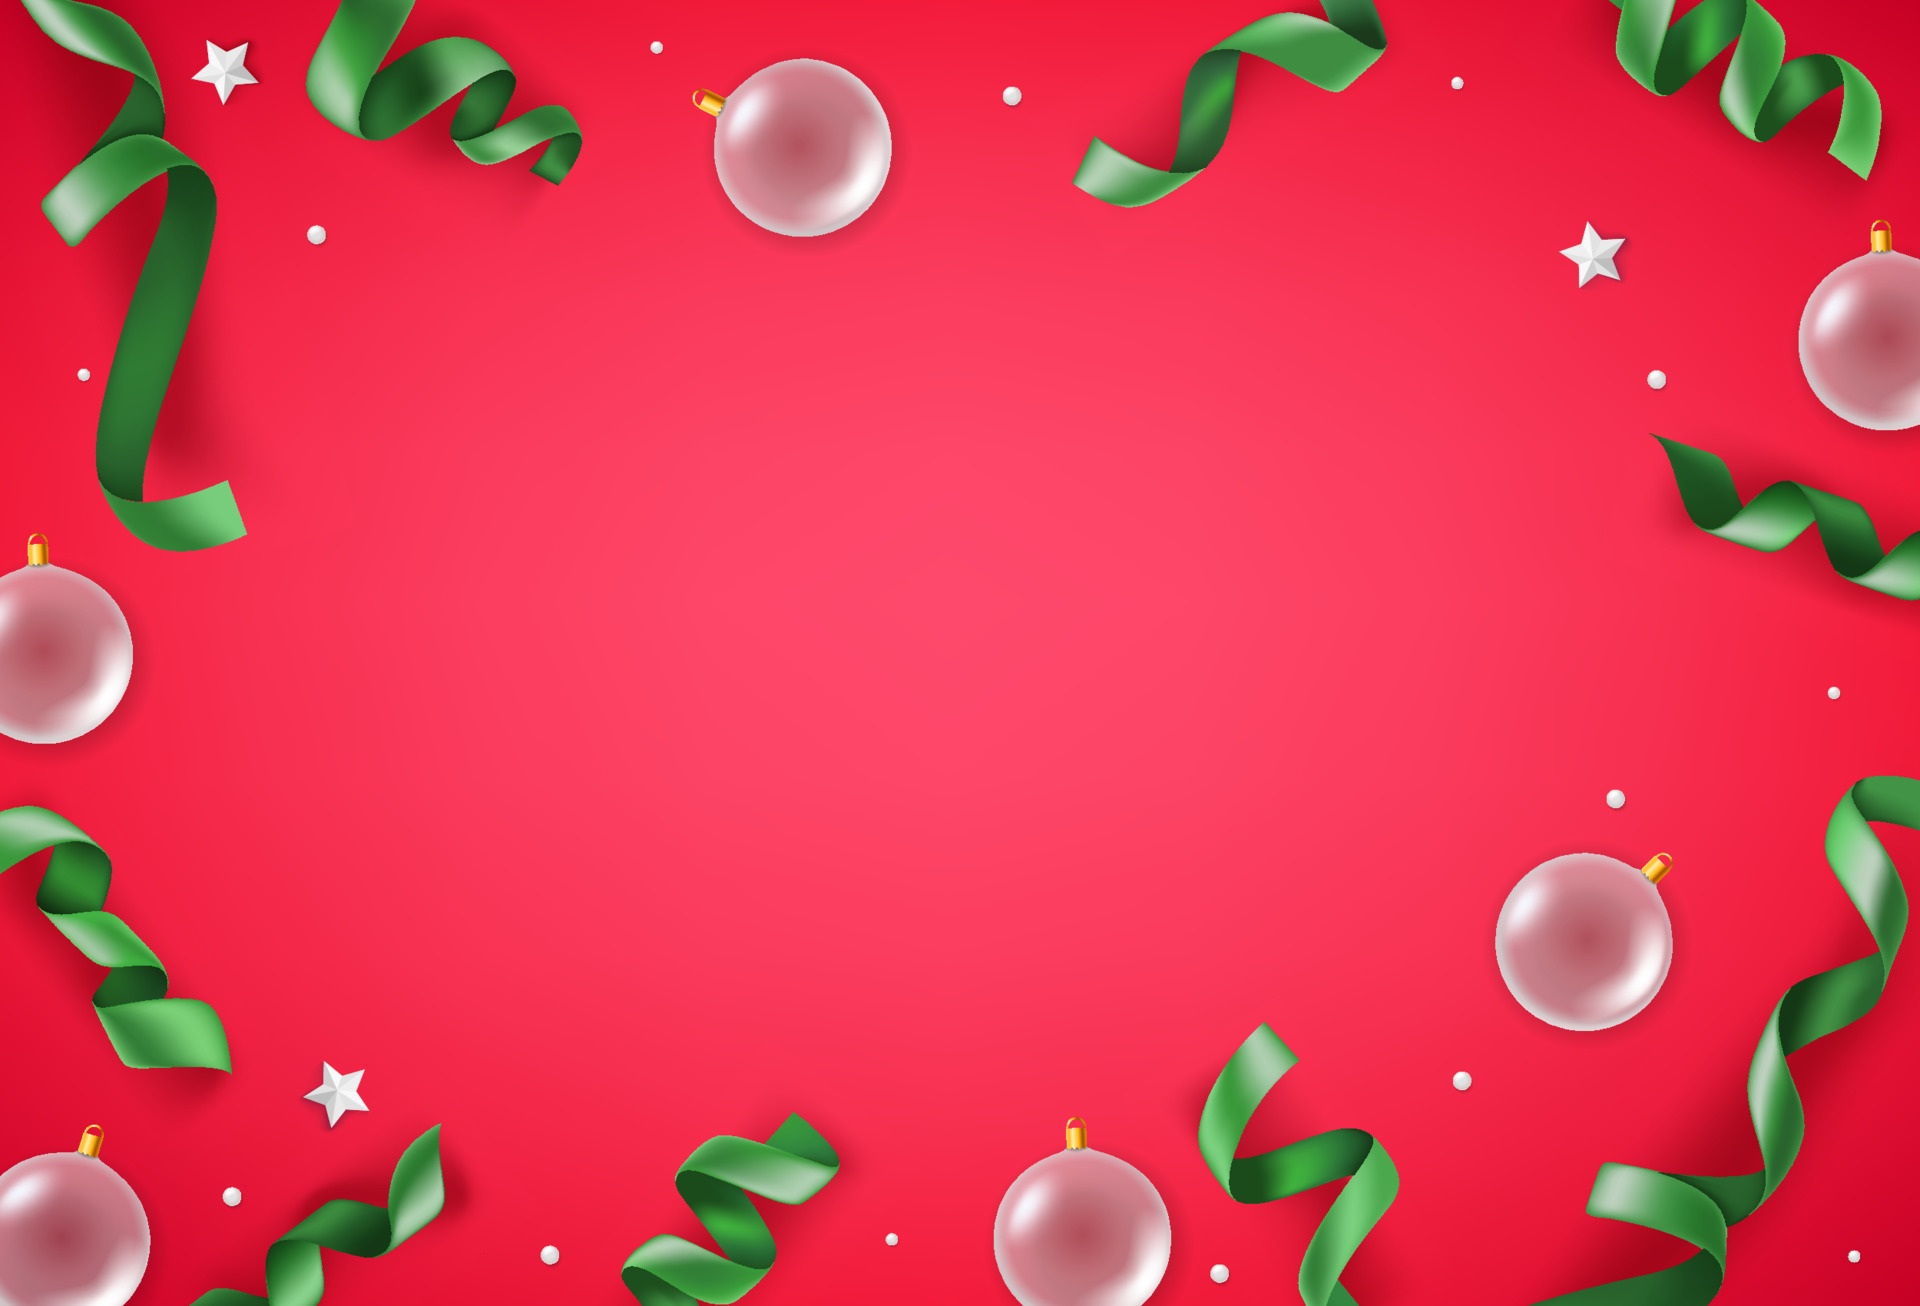 Với trang trí đồ trang trí trắng và ruy-băng xanh trên nền đỏ, không gian Giáng Sinh của bạn sẽ cực kỳ ấm áp và tràn đầy niềm vui. Màu sắc truyền thống bao gồm đỏ và xanh sẽ khiến cho bất kỳ ai nhìn vào cũng cảm thấy đầy tình cảm. Đừng ngại khám phá để có một mùa lễ hội trọn vẹn.